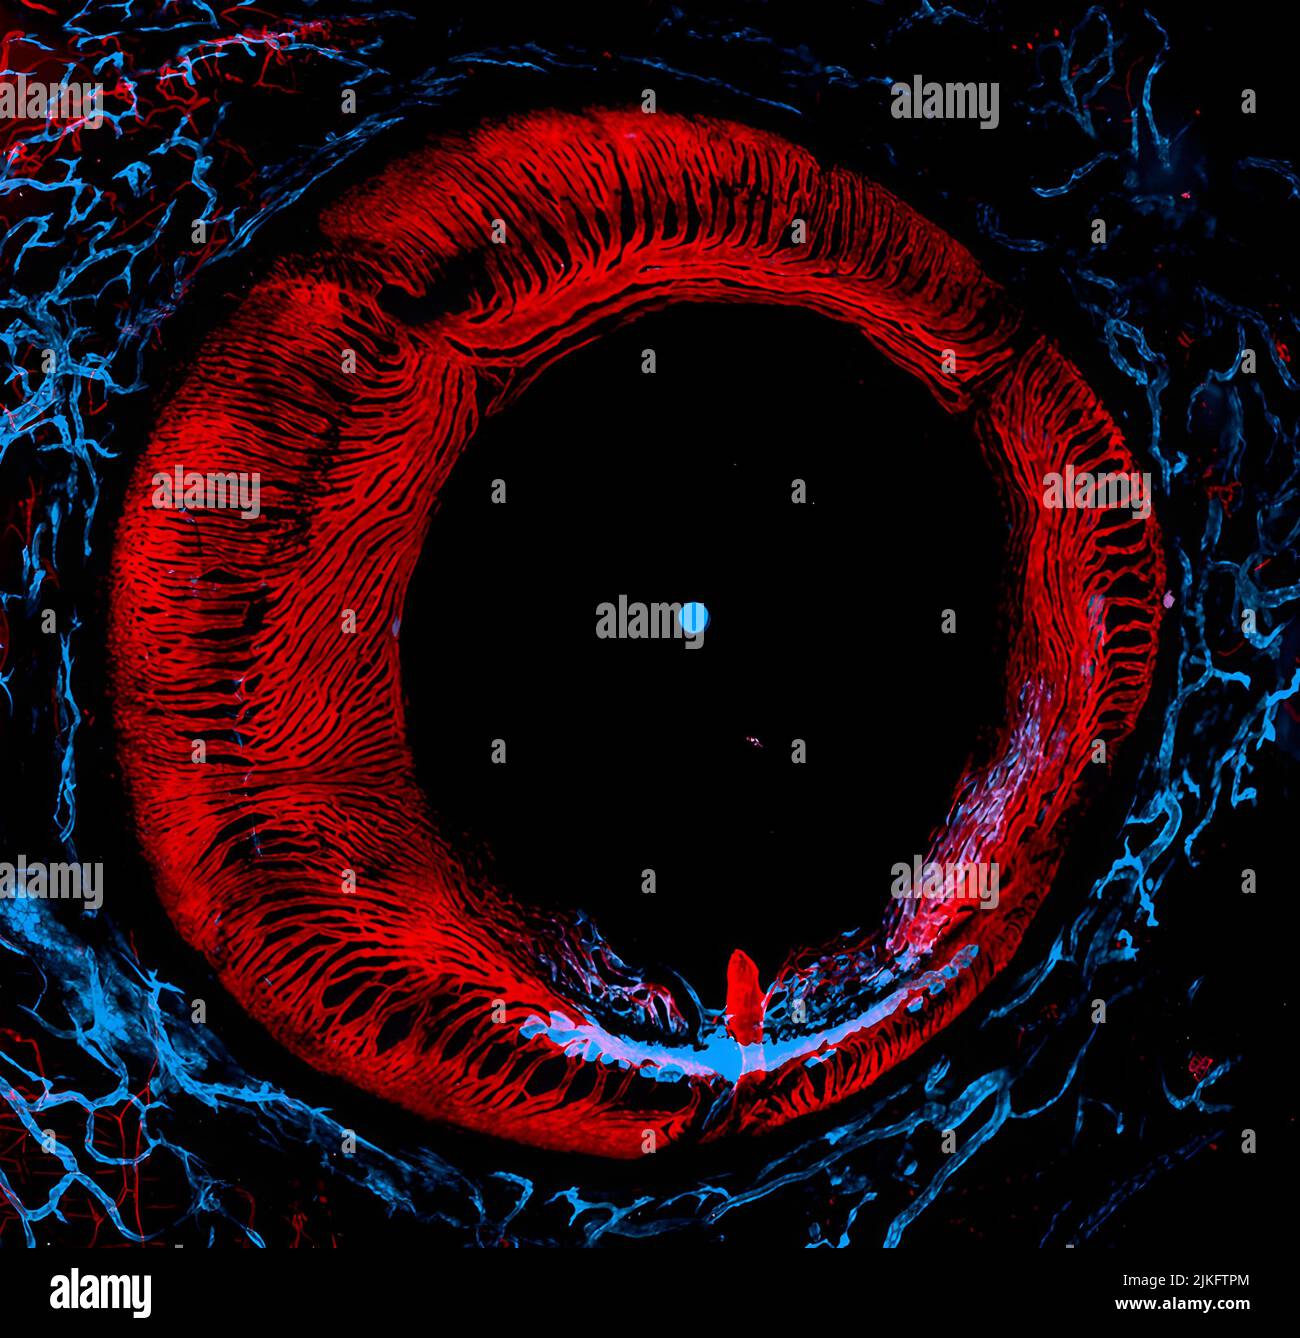 Apprendre comment le sang et les vaisseaux lymphatiques se développent et fonctionnent dans l'œil est important pour comprendre et traiter les maladies et les troubles oculaires chez les personnes. Cette photo d'un poisson-zèbre adulte anesthésié a été prise à l'aide d'un microscope puissant qui utilise des lasers pour éclairer le poisson. L'image montre les vaisseaux sanguins (rouge) et les vaisseaux lymphatiques (bleu) dans l'œil. Cette photo a également remporté l'image de distinction du prix dans le concours du petit monde Nikon. Banque D'Images